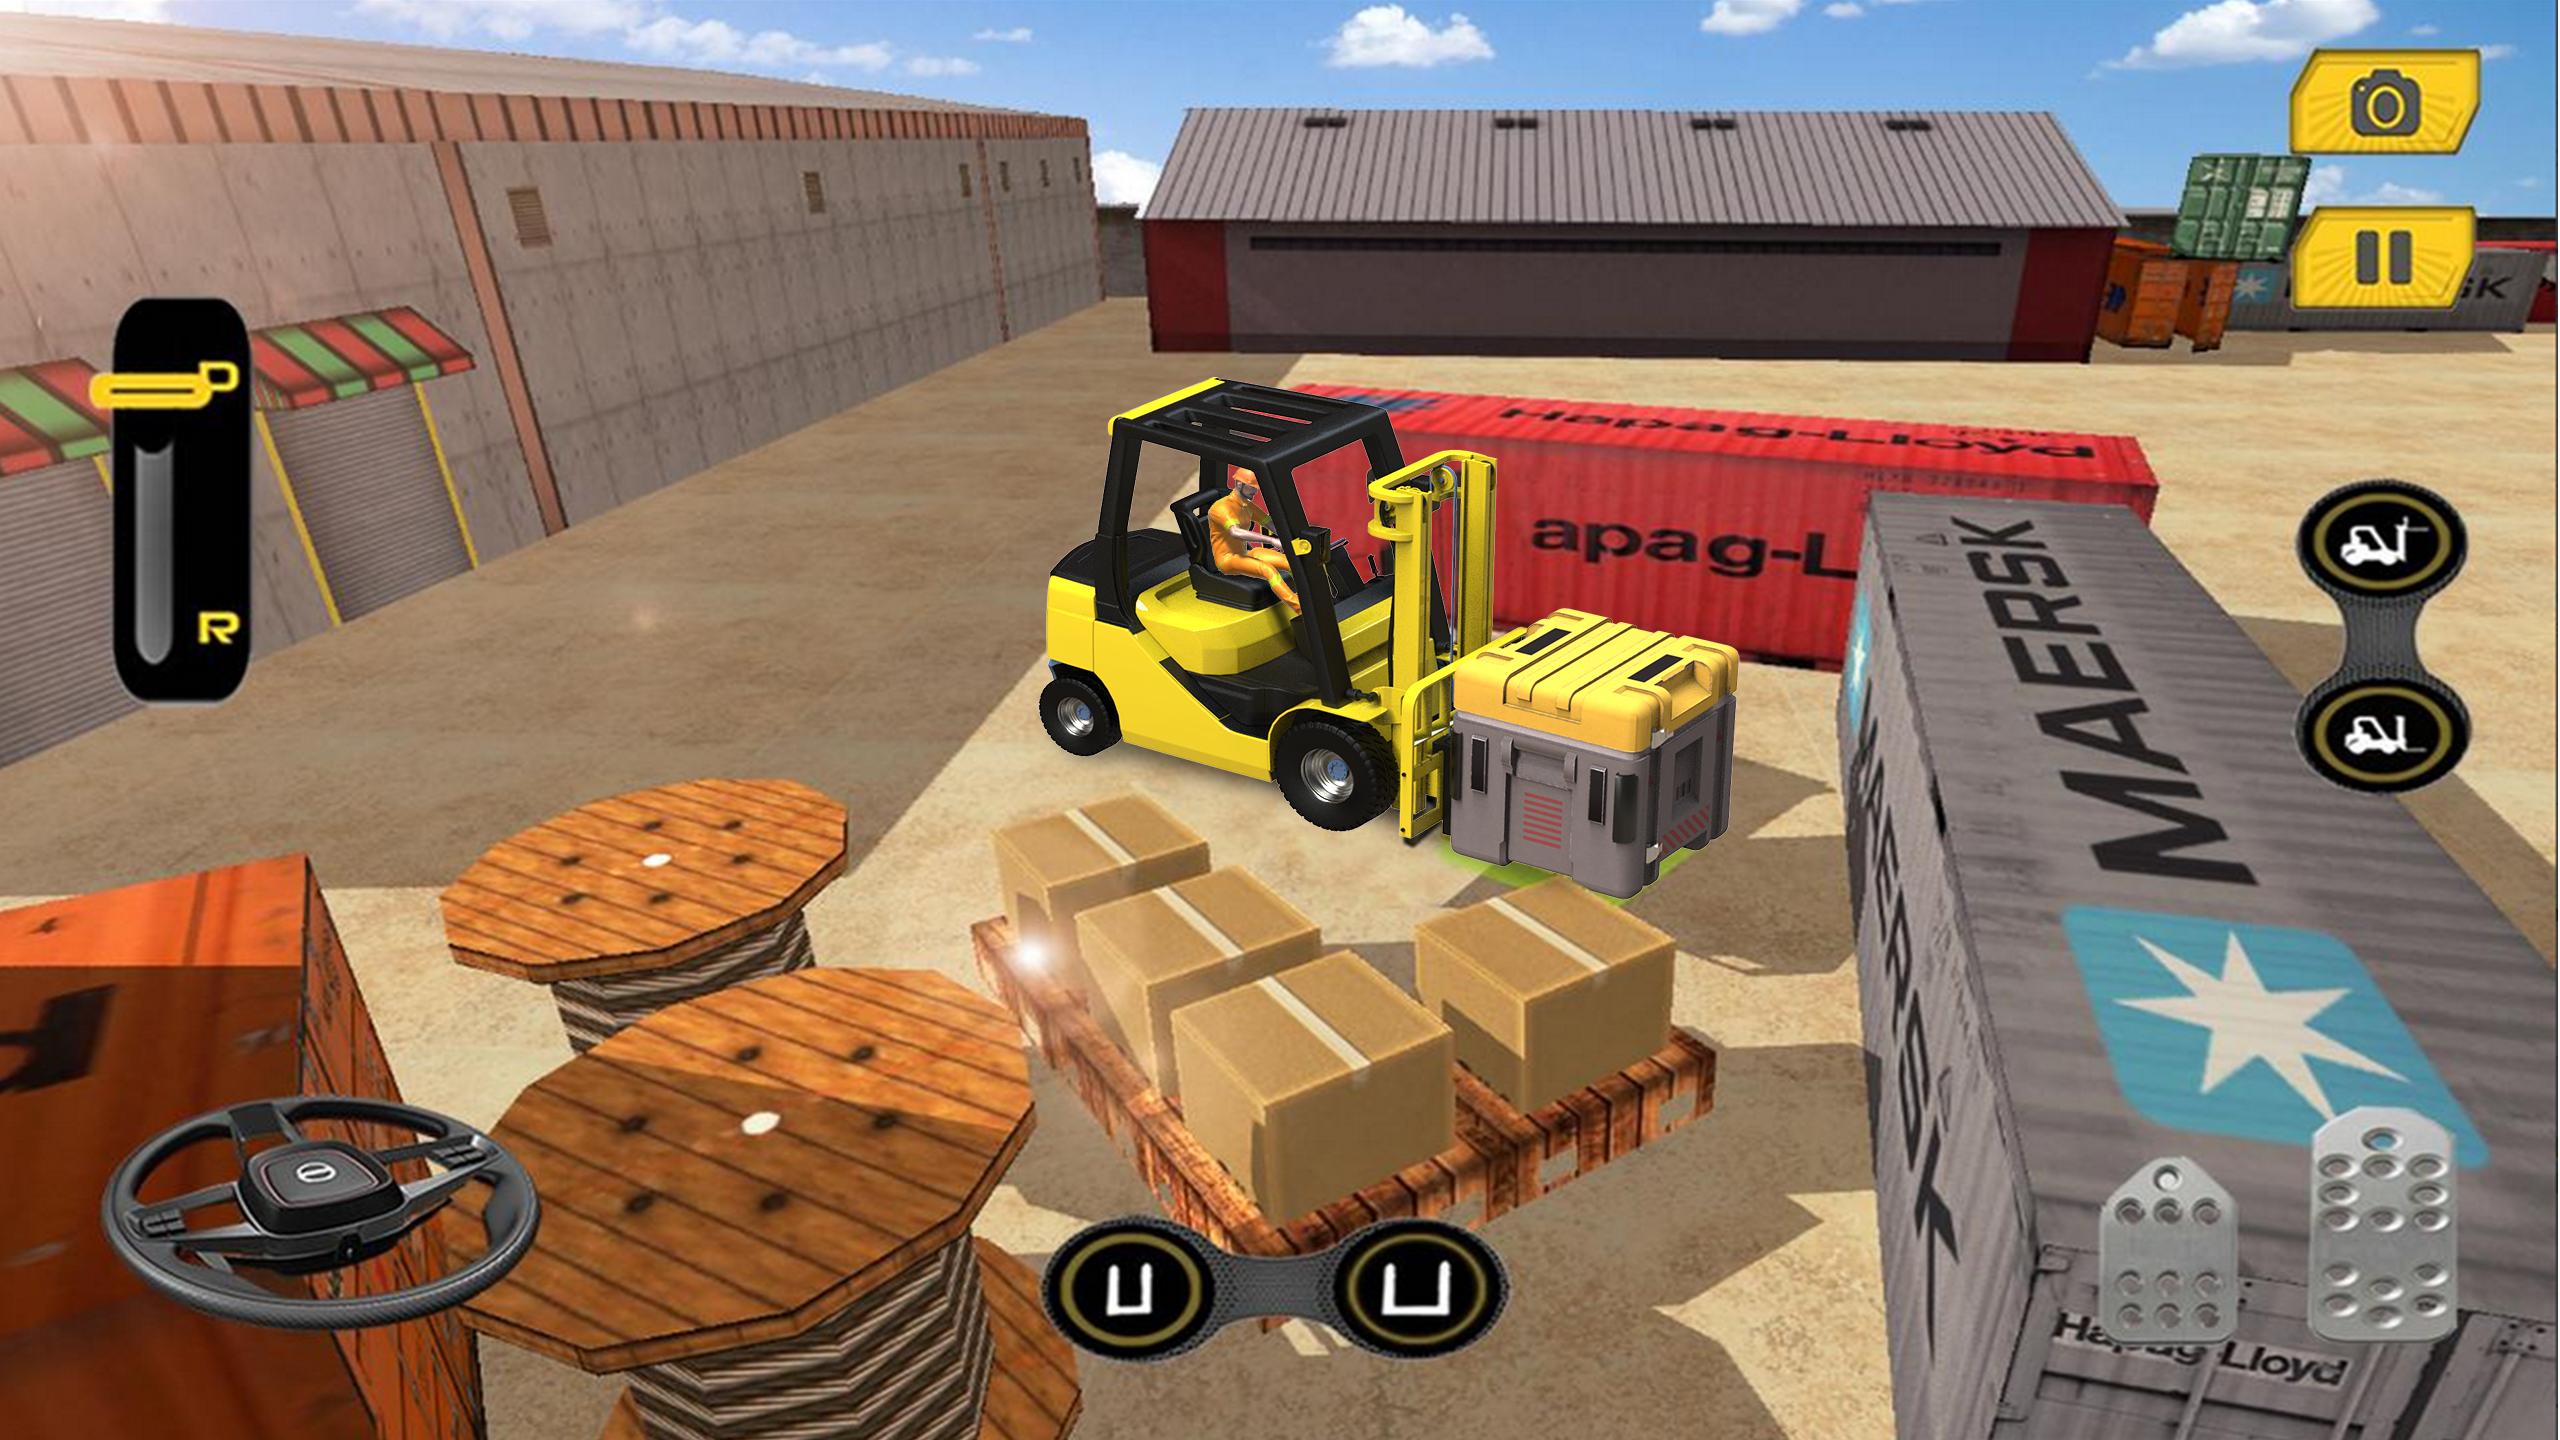 Real Forklift Simulator 2019: Cargo Forklift Games 3.1 Screenshot 13